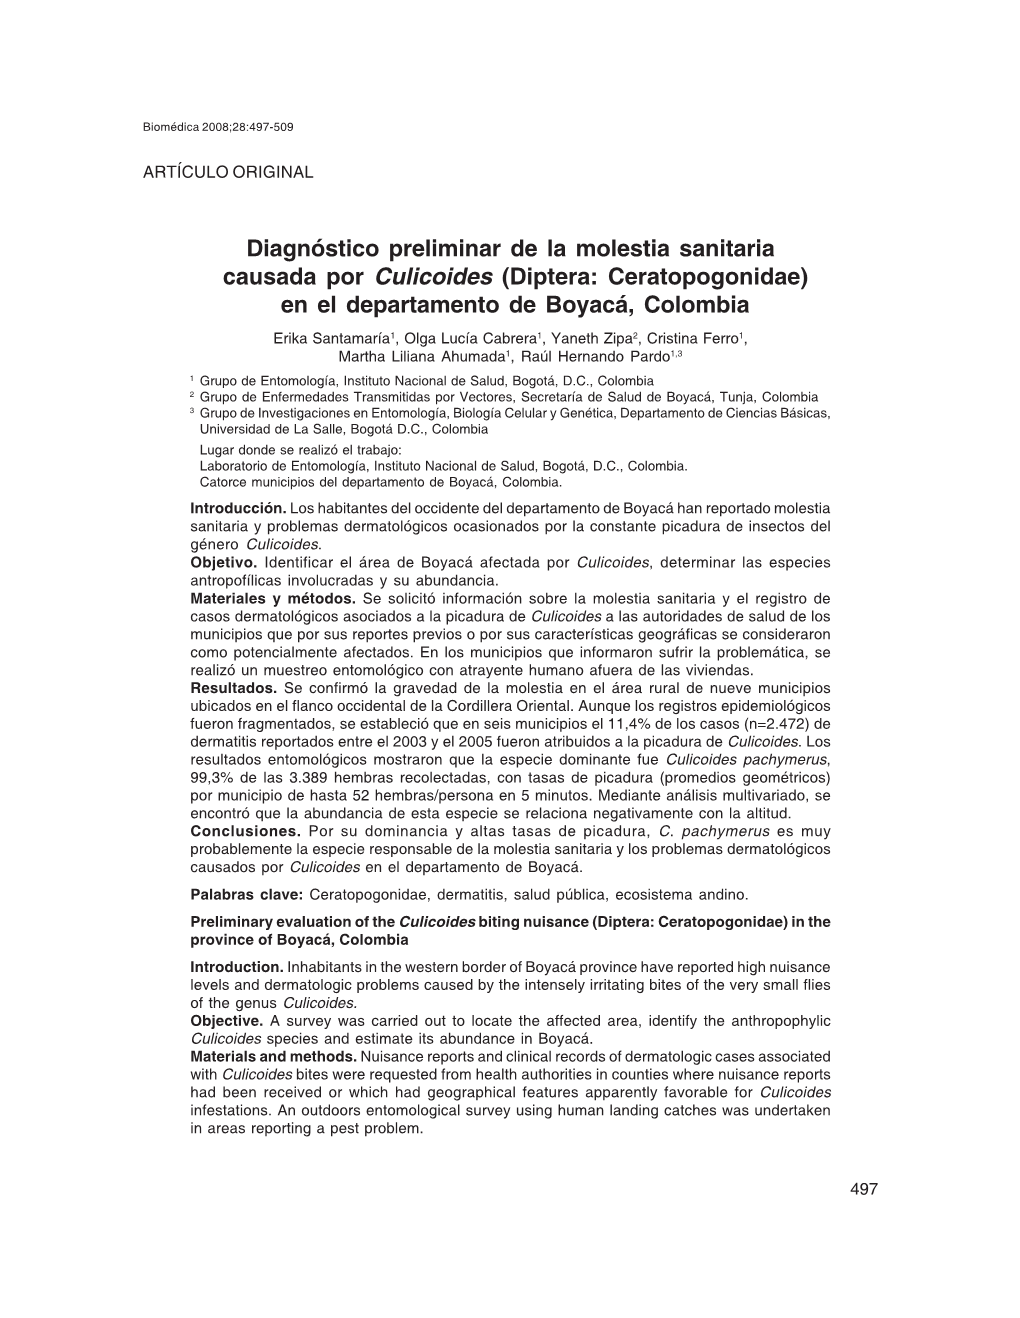 Diagnóstico Preliminar De La Molestia Sanitaria Causada Por Culicoides (Diptera: Ceratopogonidae)